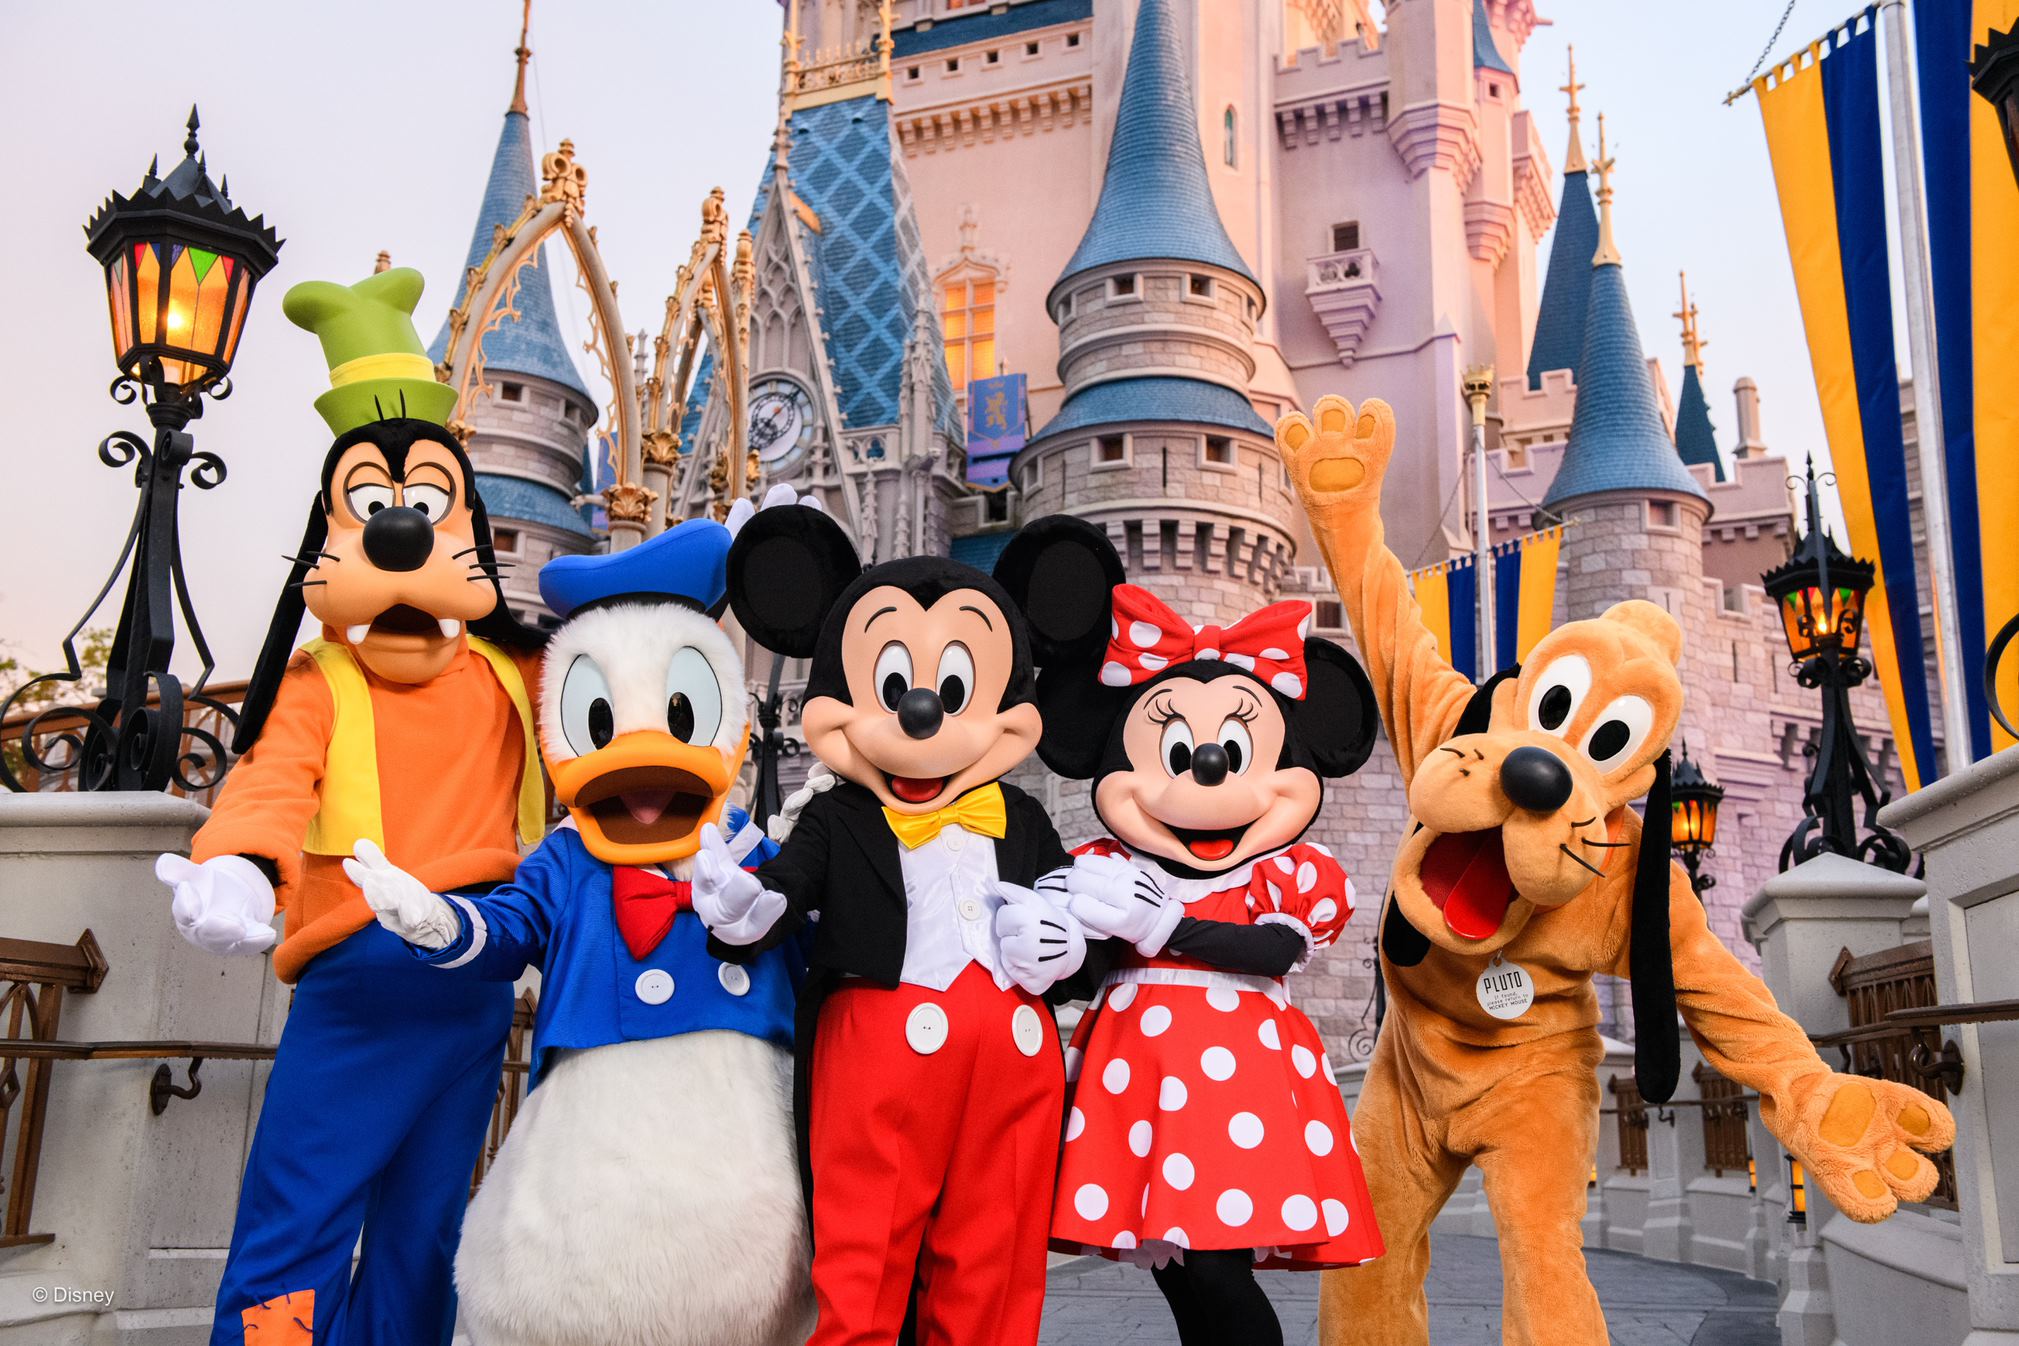 Disney World Florida fab 5 with Cinderella castle behind them